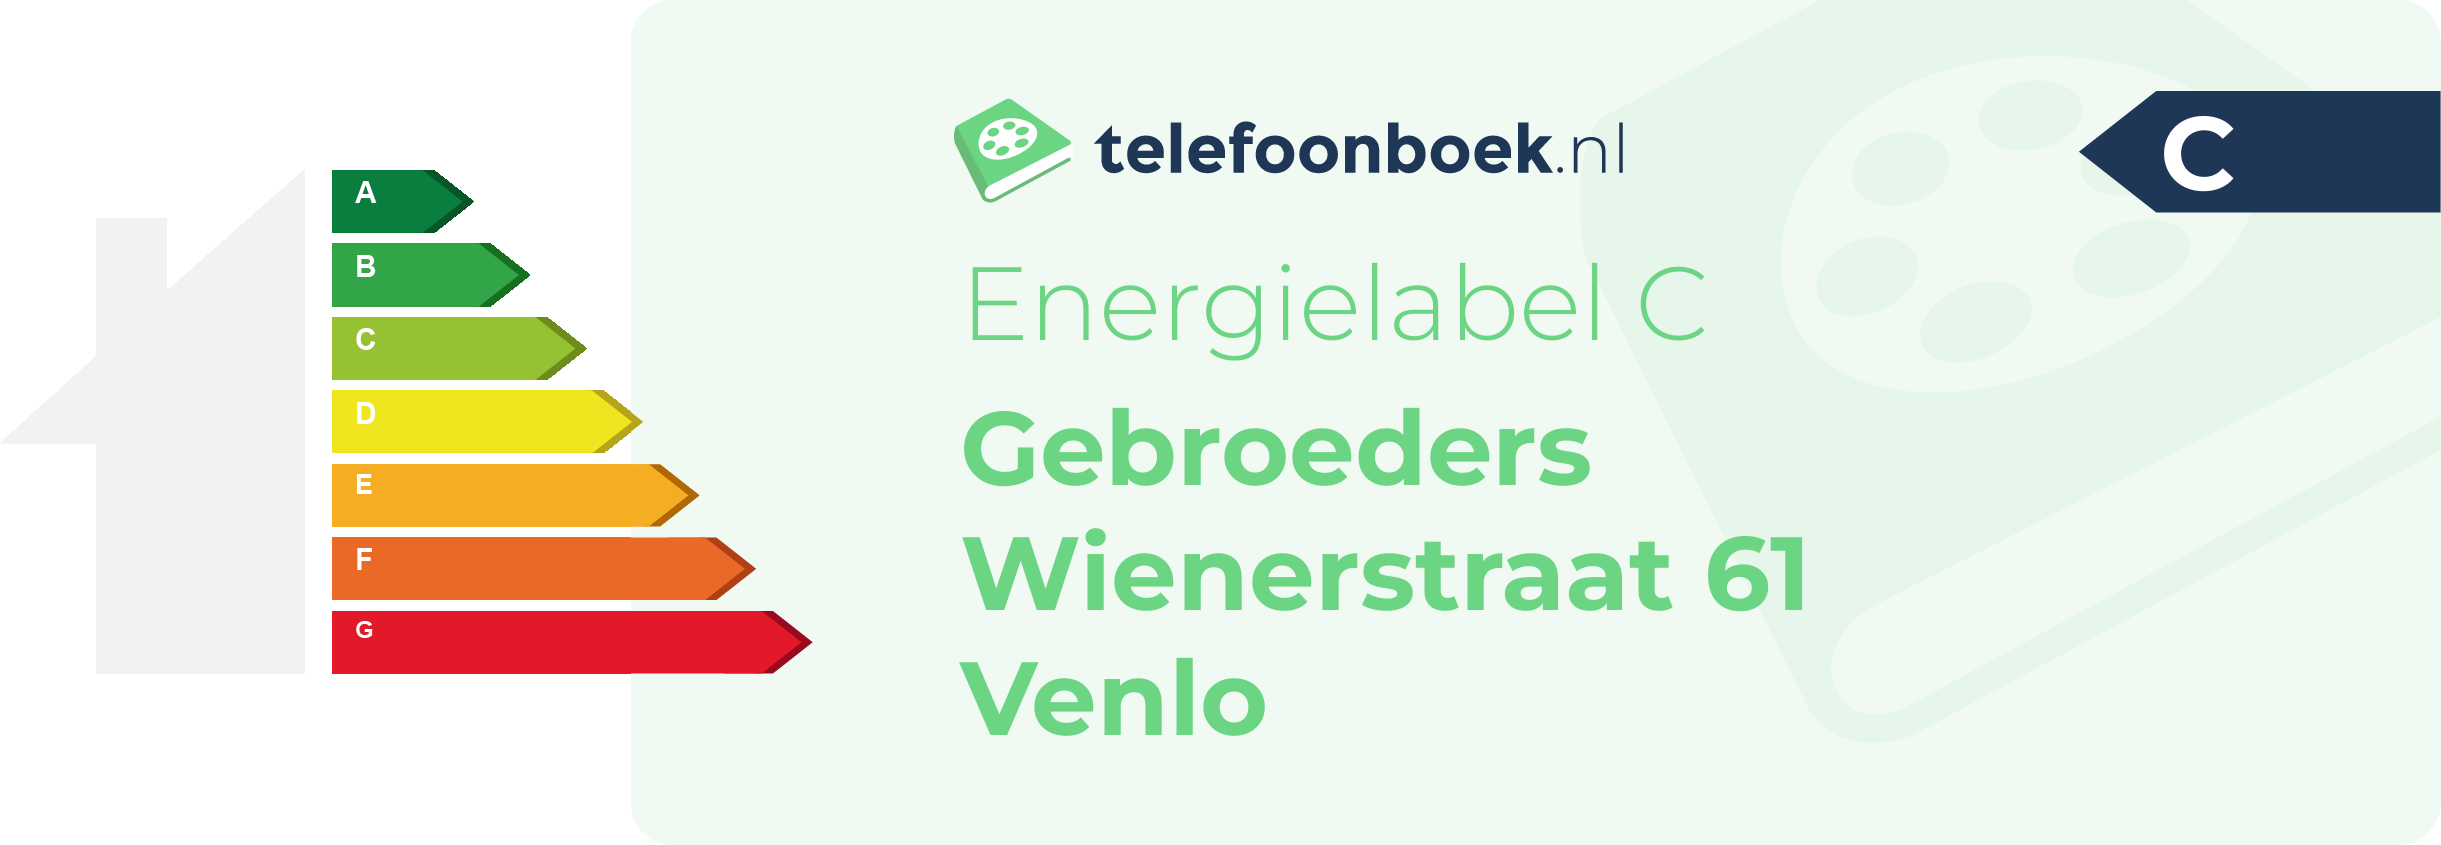 Energielabel Gebroeders Wienerstraat 61 Venlo